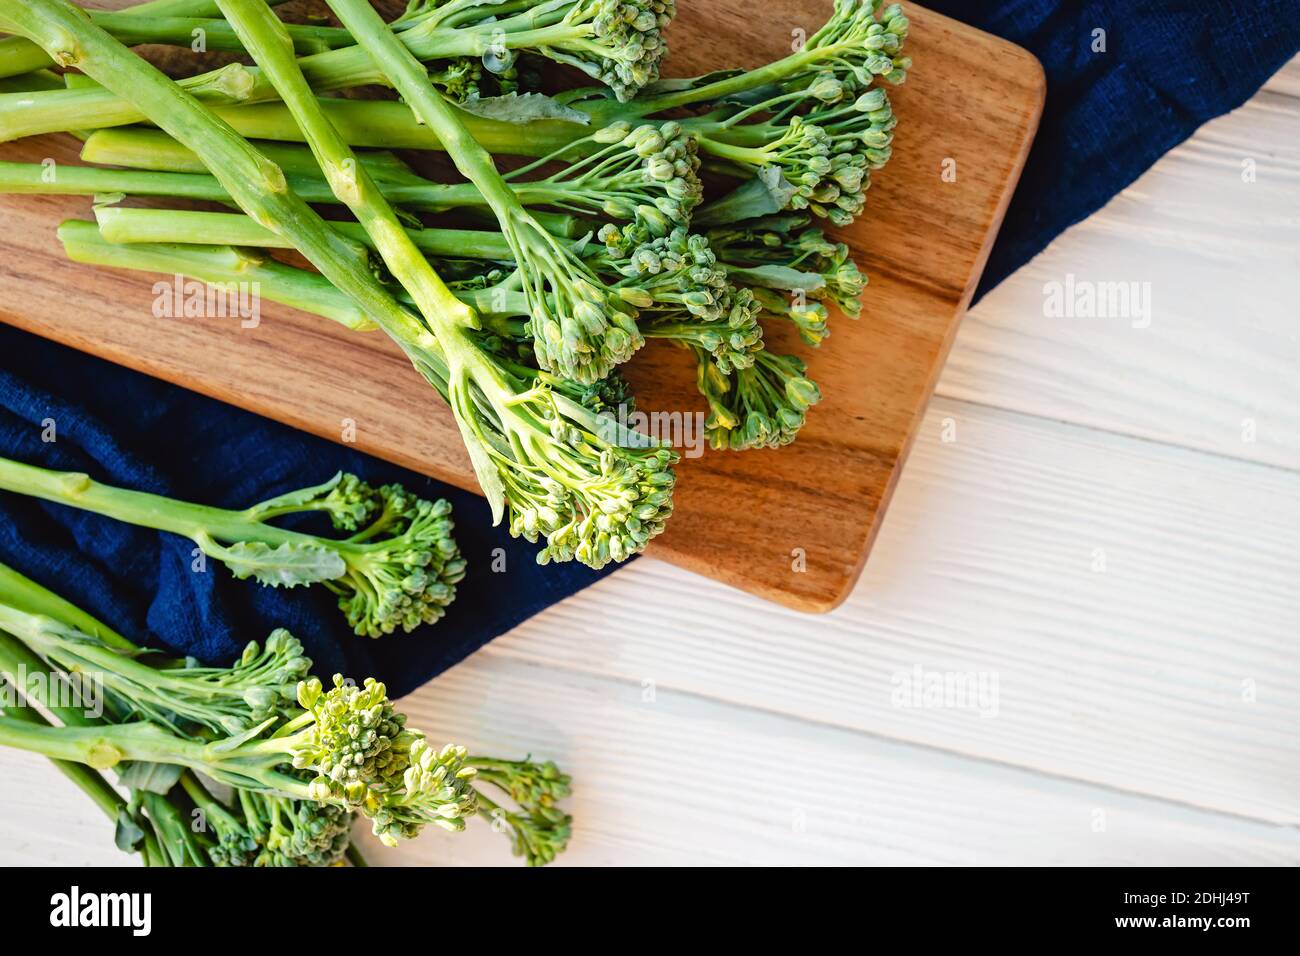 Verdure crude verdi broccolini su tavola di legno. Cibo biologico sano, vista dall'alto Foto Stock